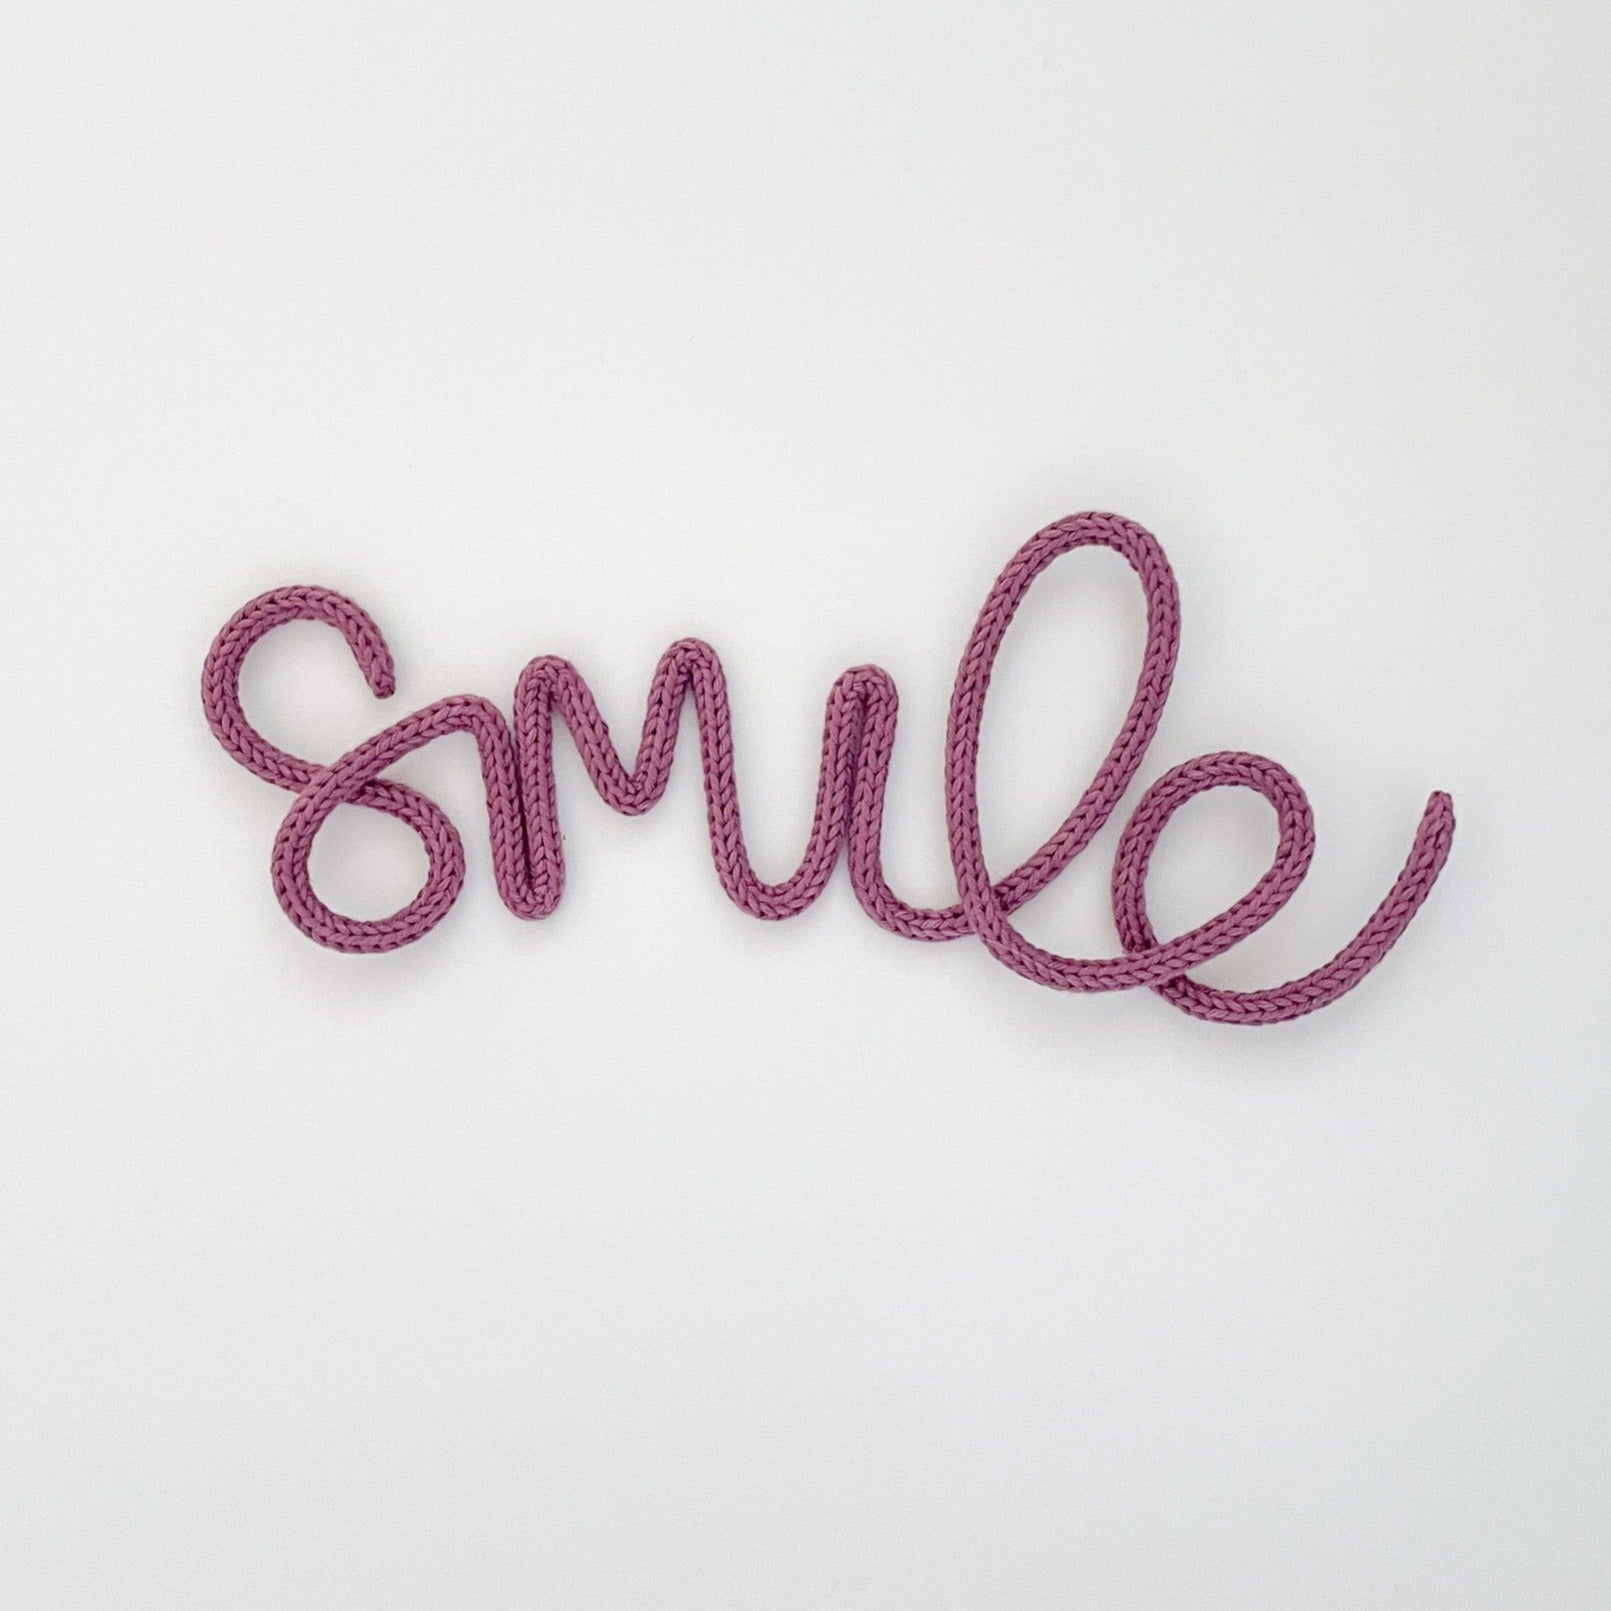 heykiddostudio 'Smile' Word Wall Sign